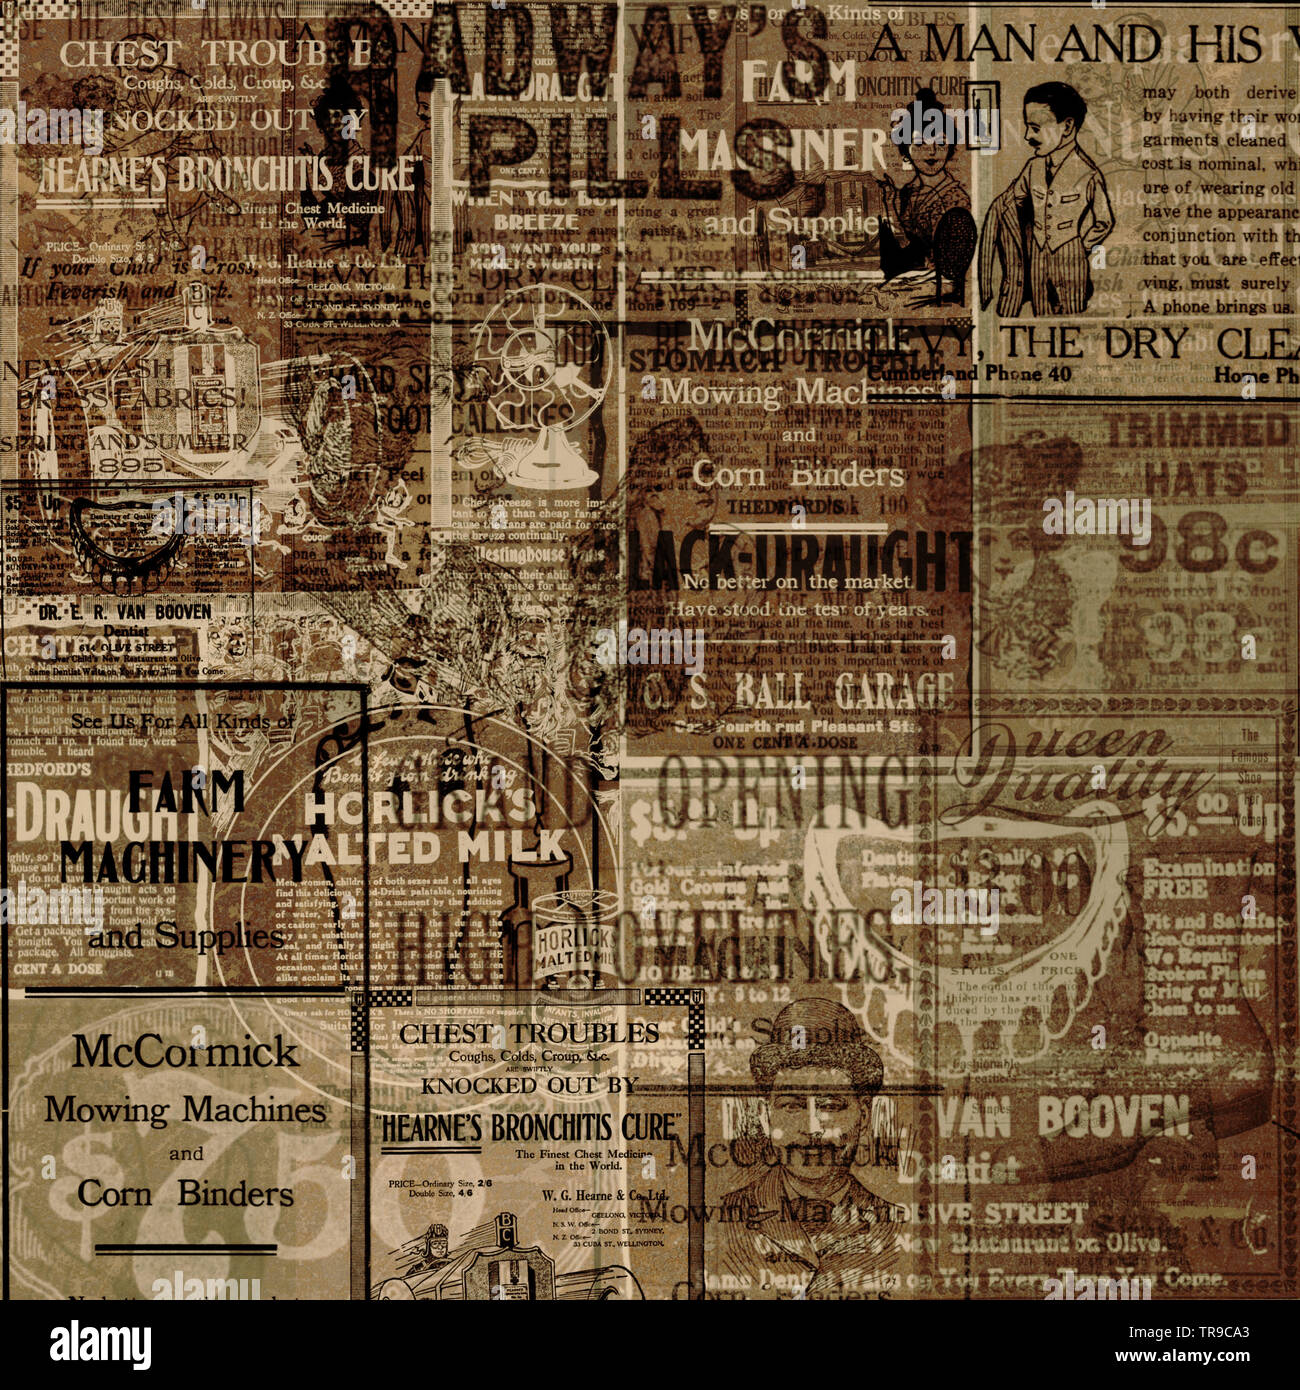 Publicités de vieux journaux étaient du domaine public pour créer des collages papiers numérique unique Banque D'Images